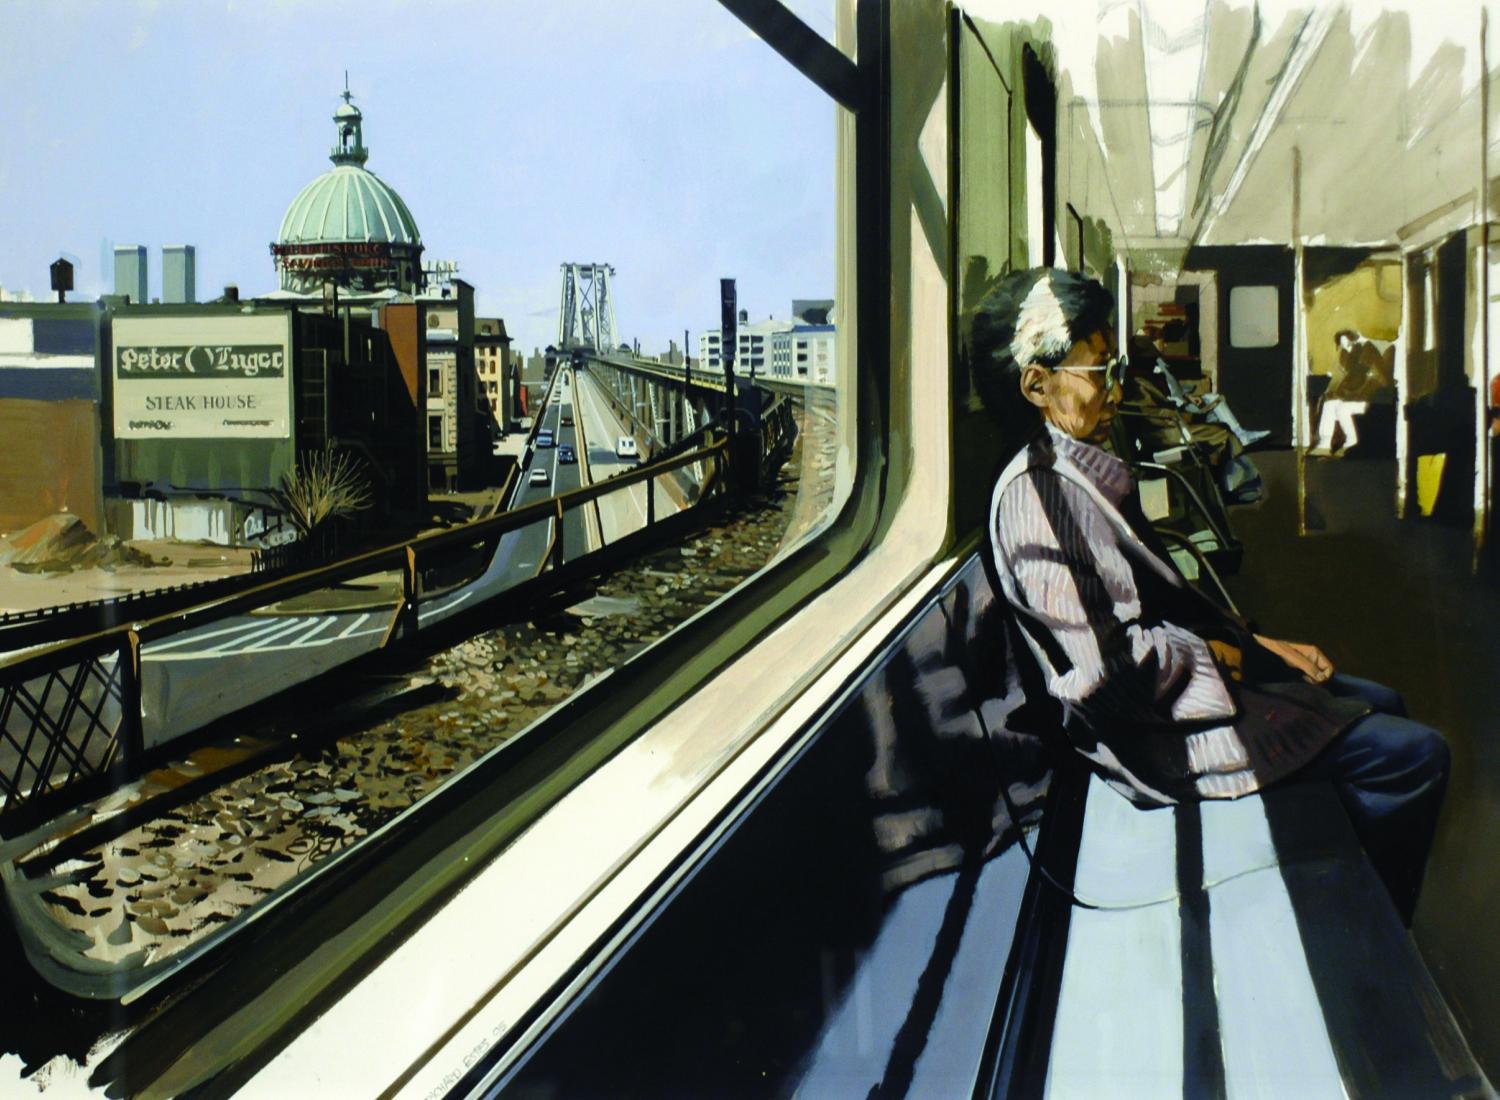 坐在 M 火车上穿越威廉斯堡大桥的人的绘画